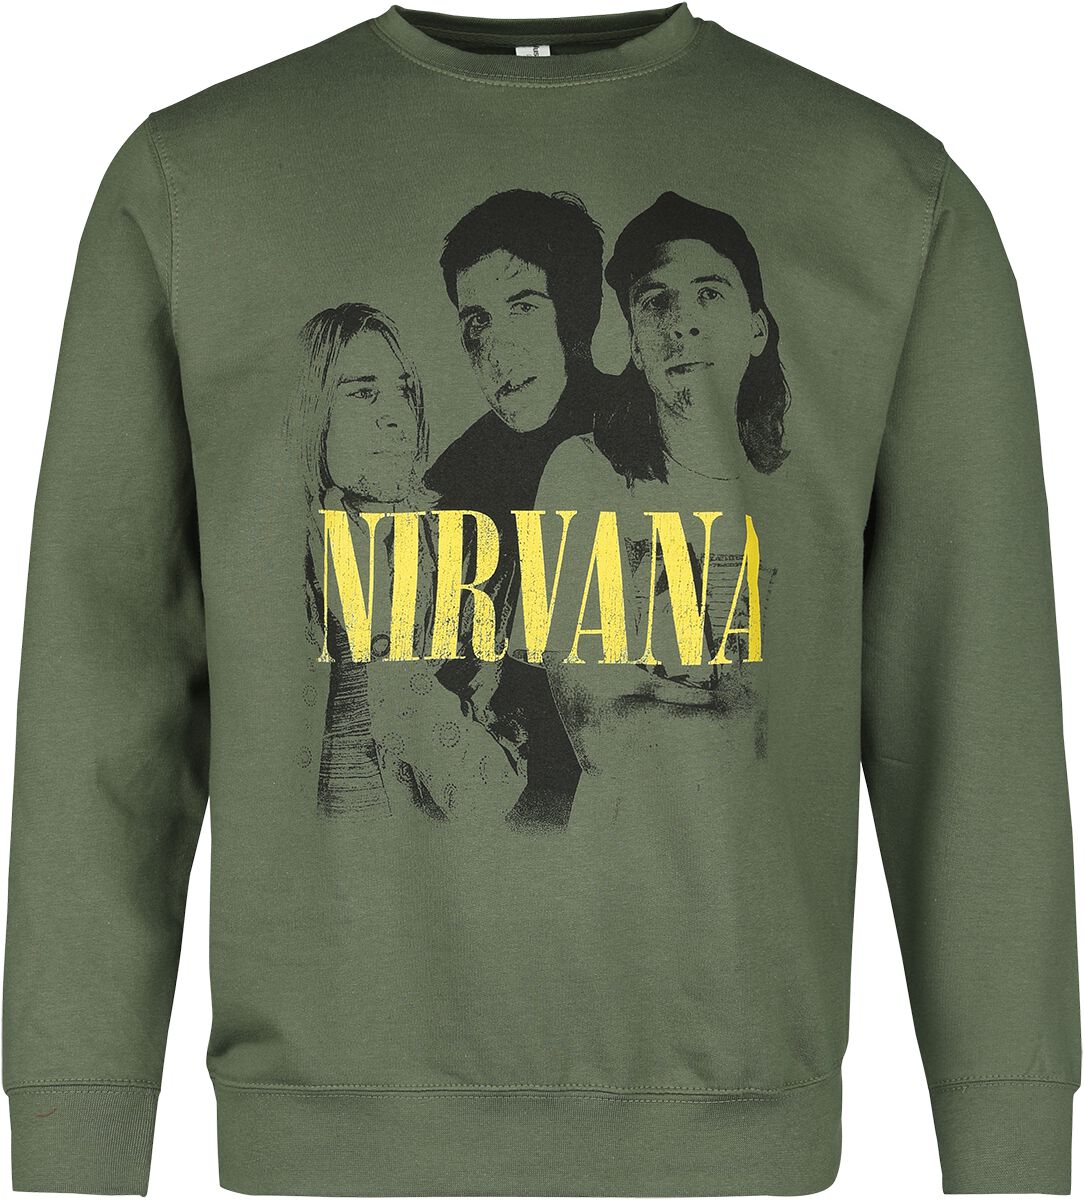 Nirvana Langarmshirt - Photo - S bis XXL - für Männer - Größe XXL - grün  - Lizenziertes Merchandise!